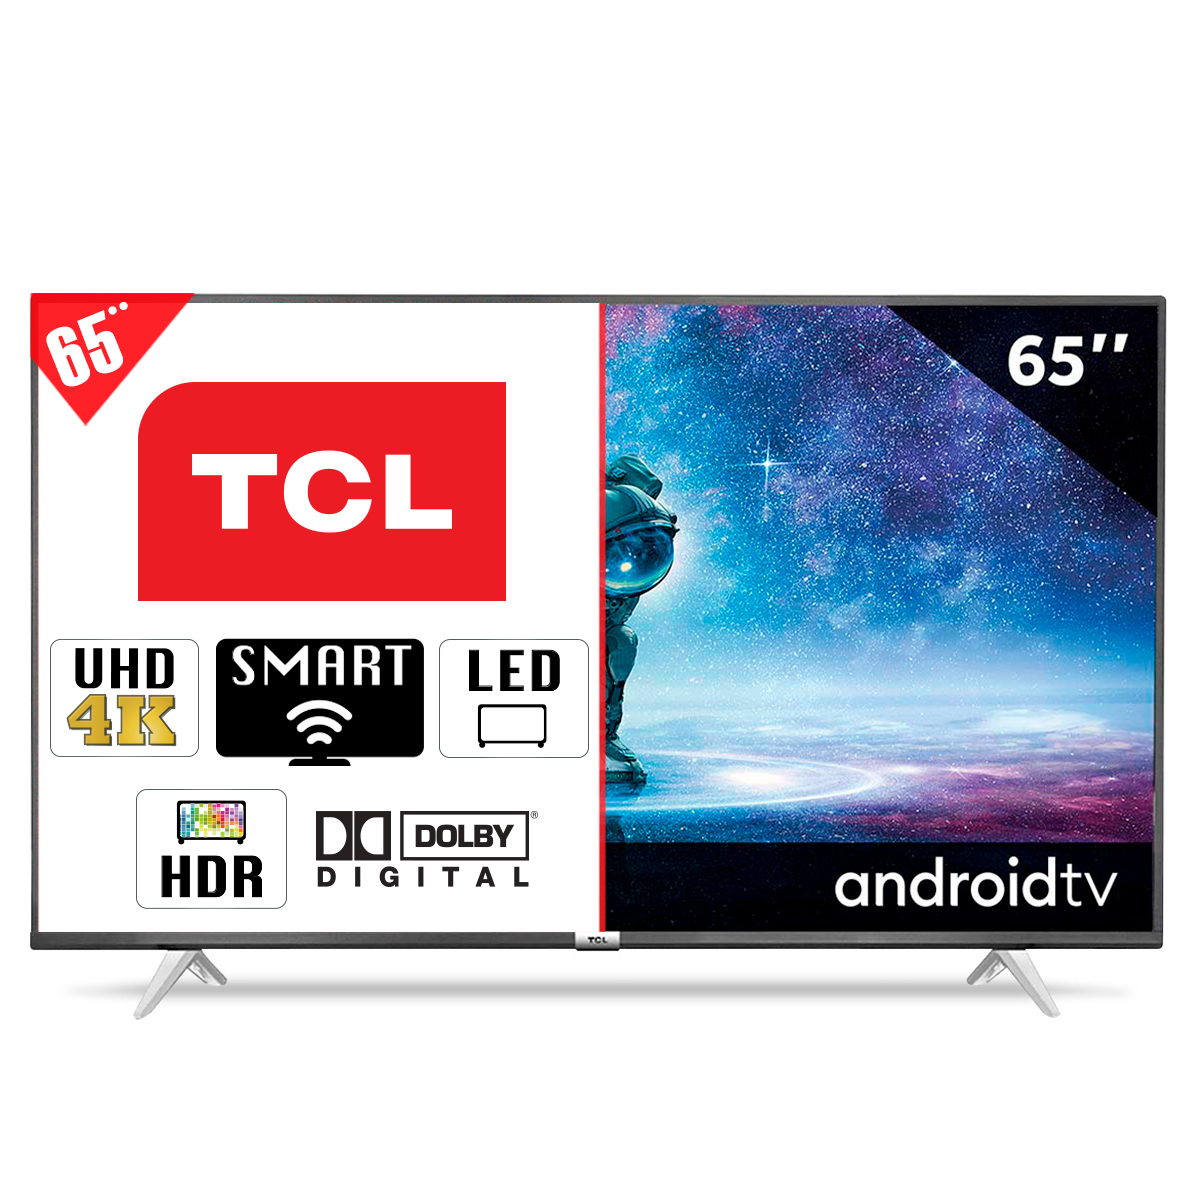 Modelos de TCL Roku TV – Encuentra smart TV HD y 4K